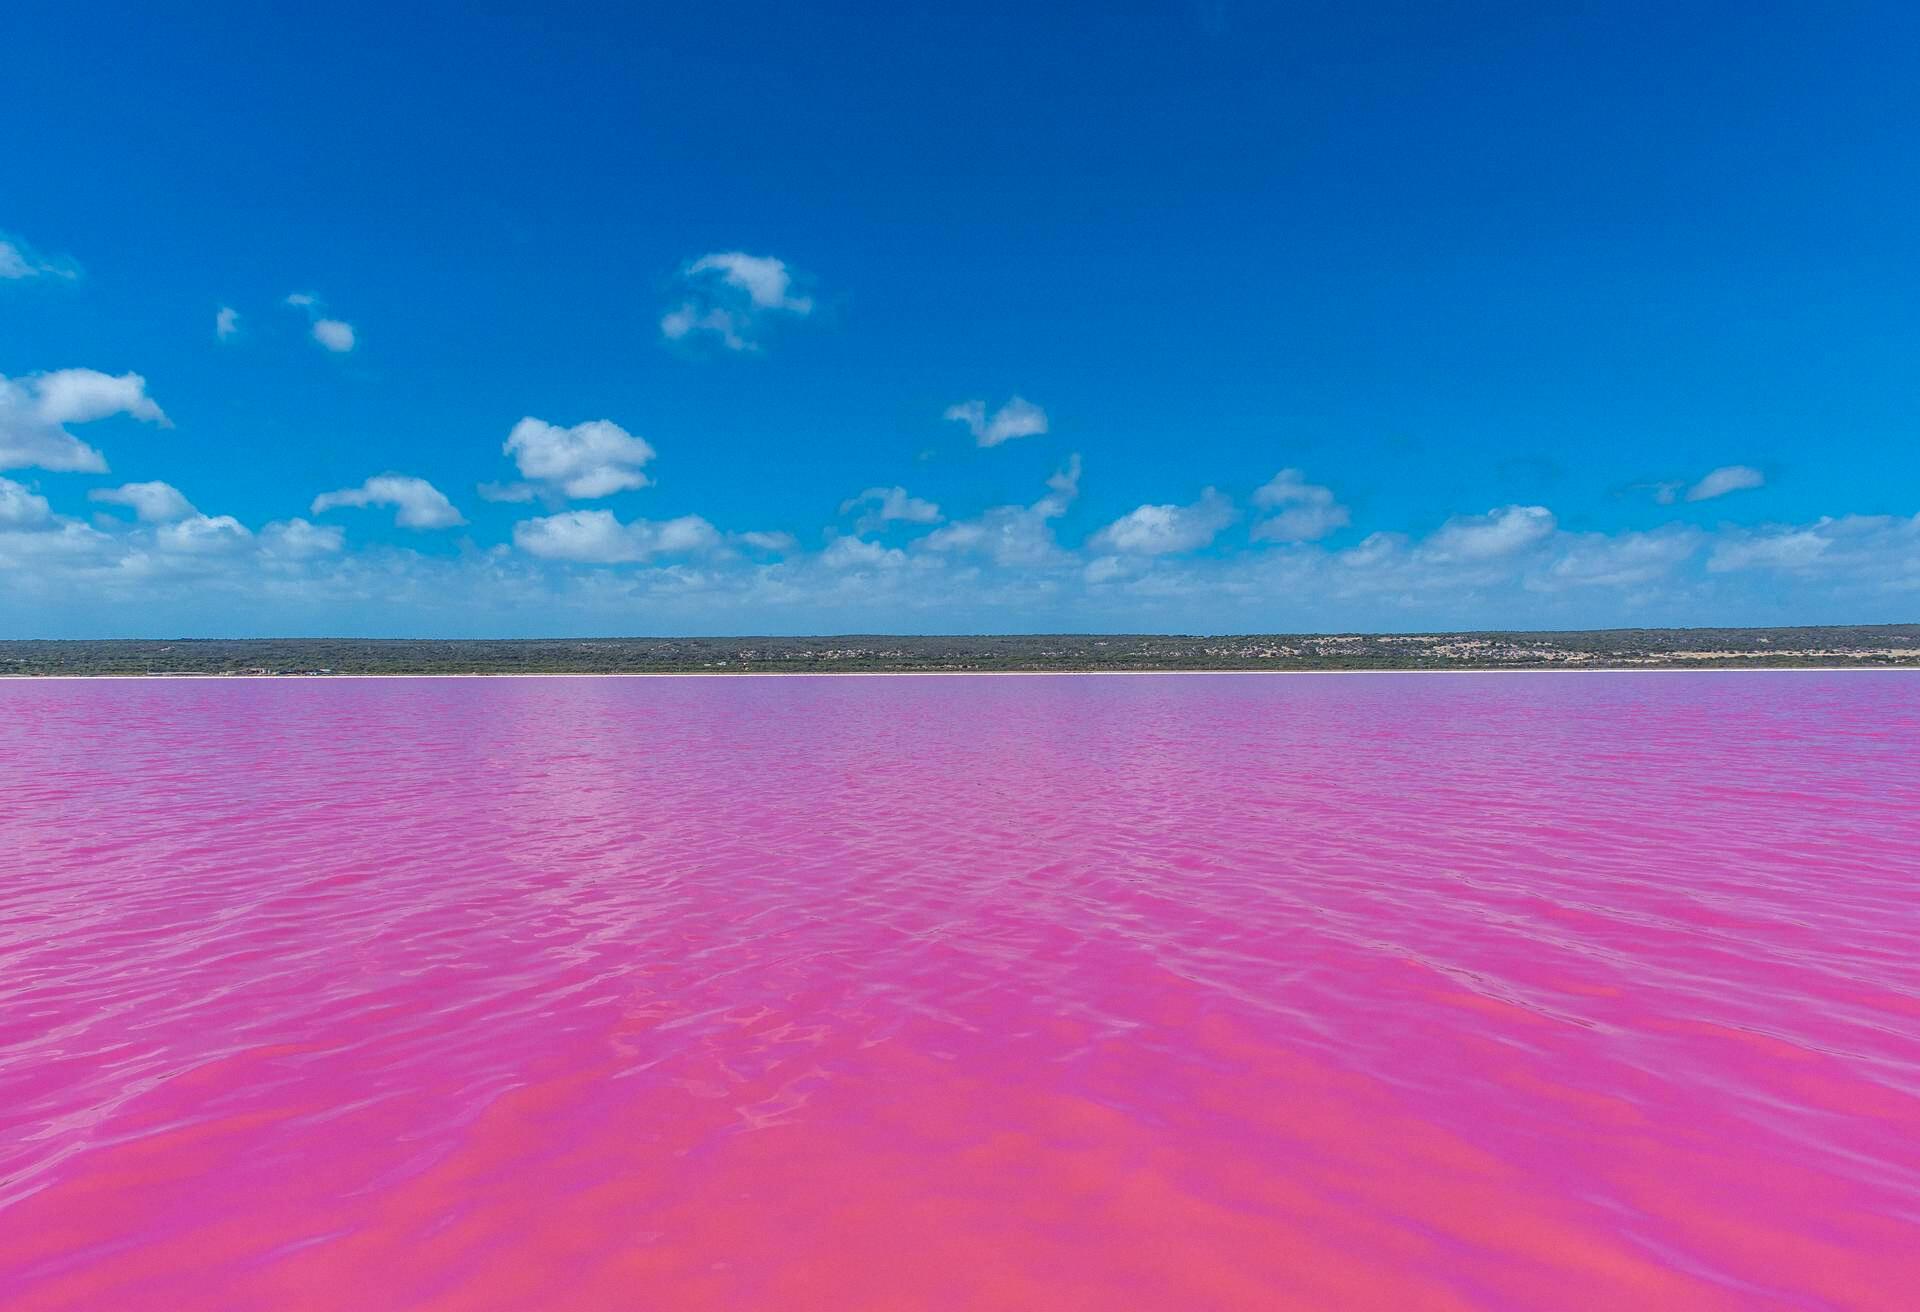 Oh, Blushing Pink Lake! To Swim or Not To Swim?